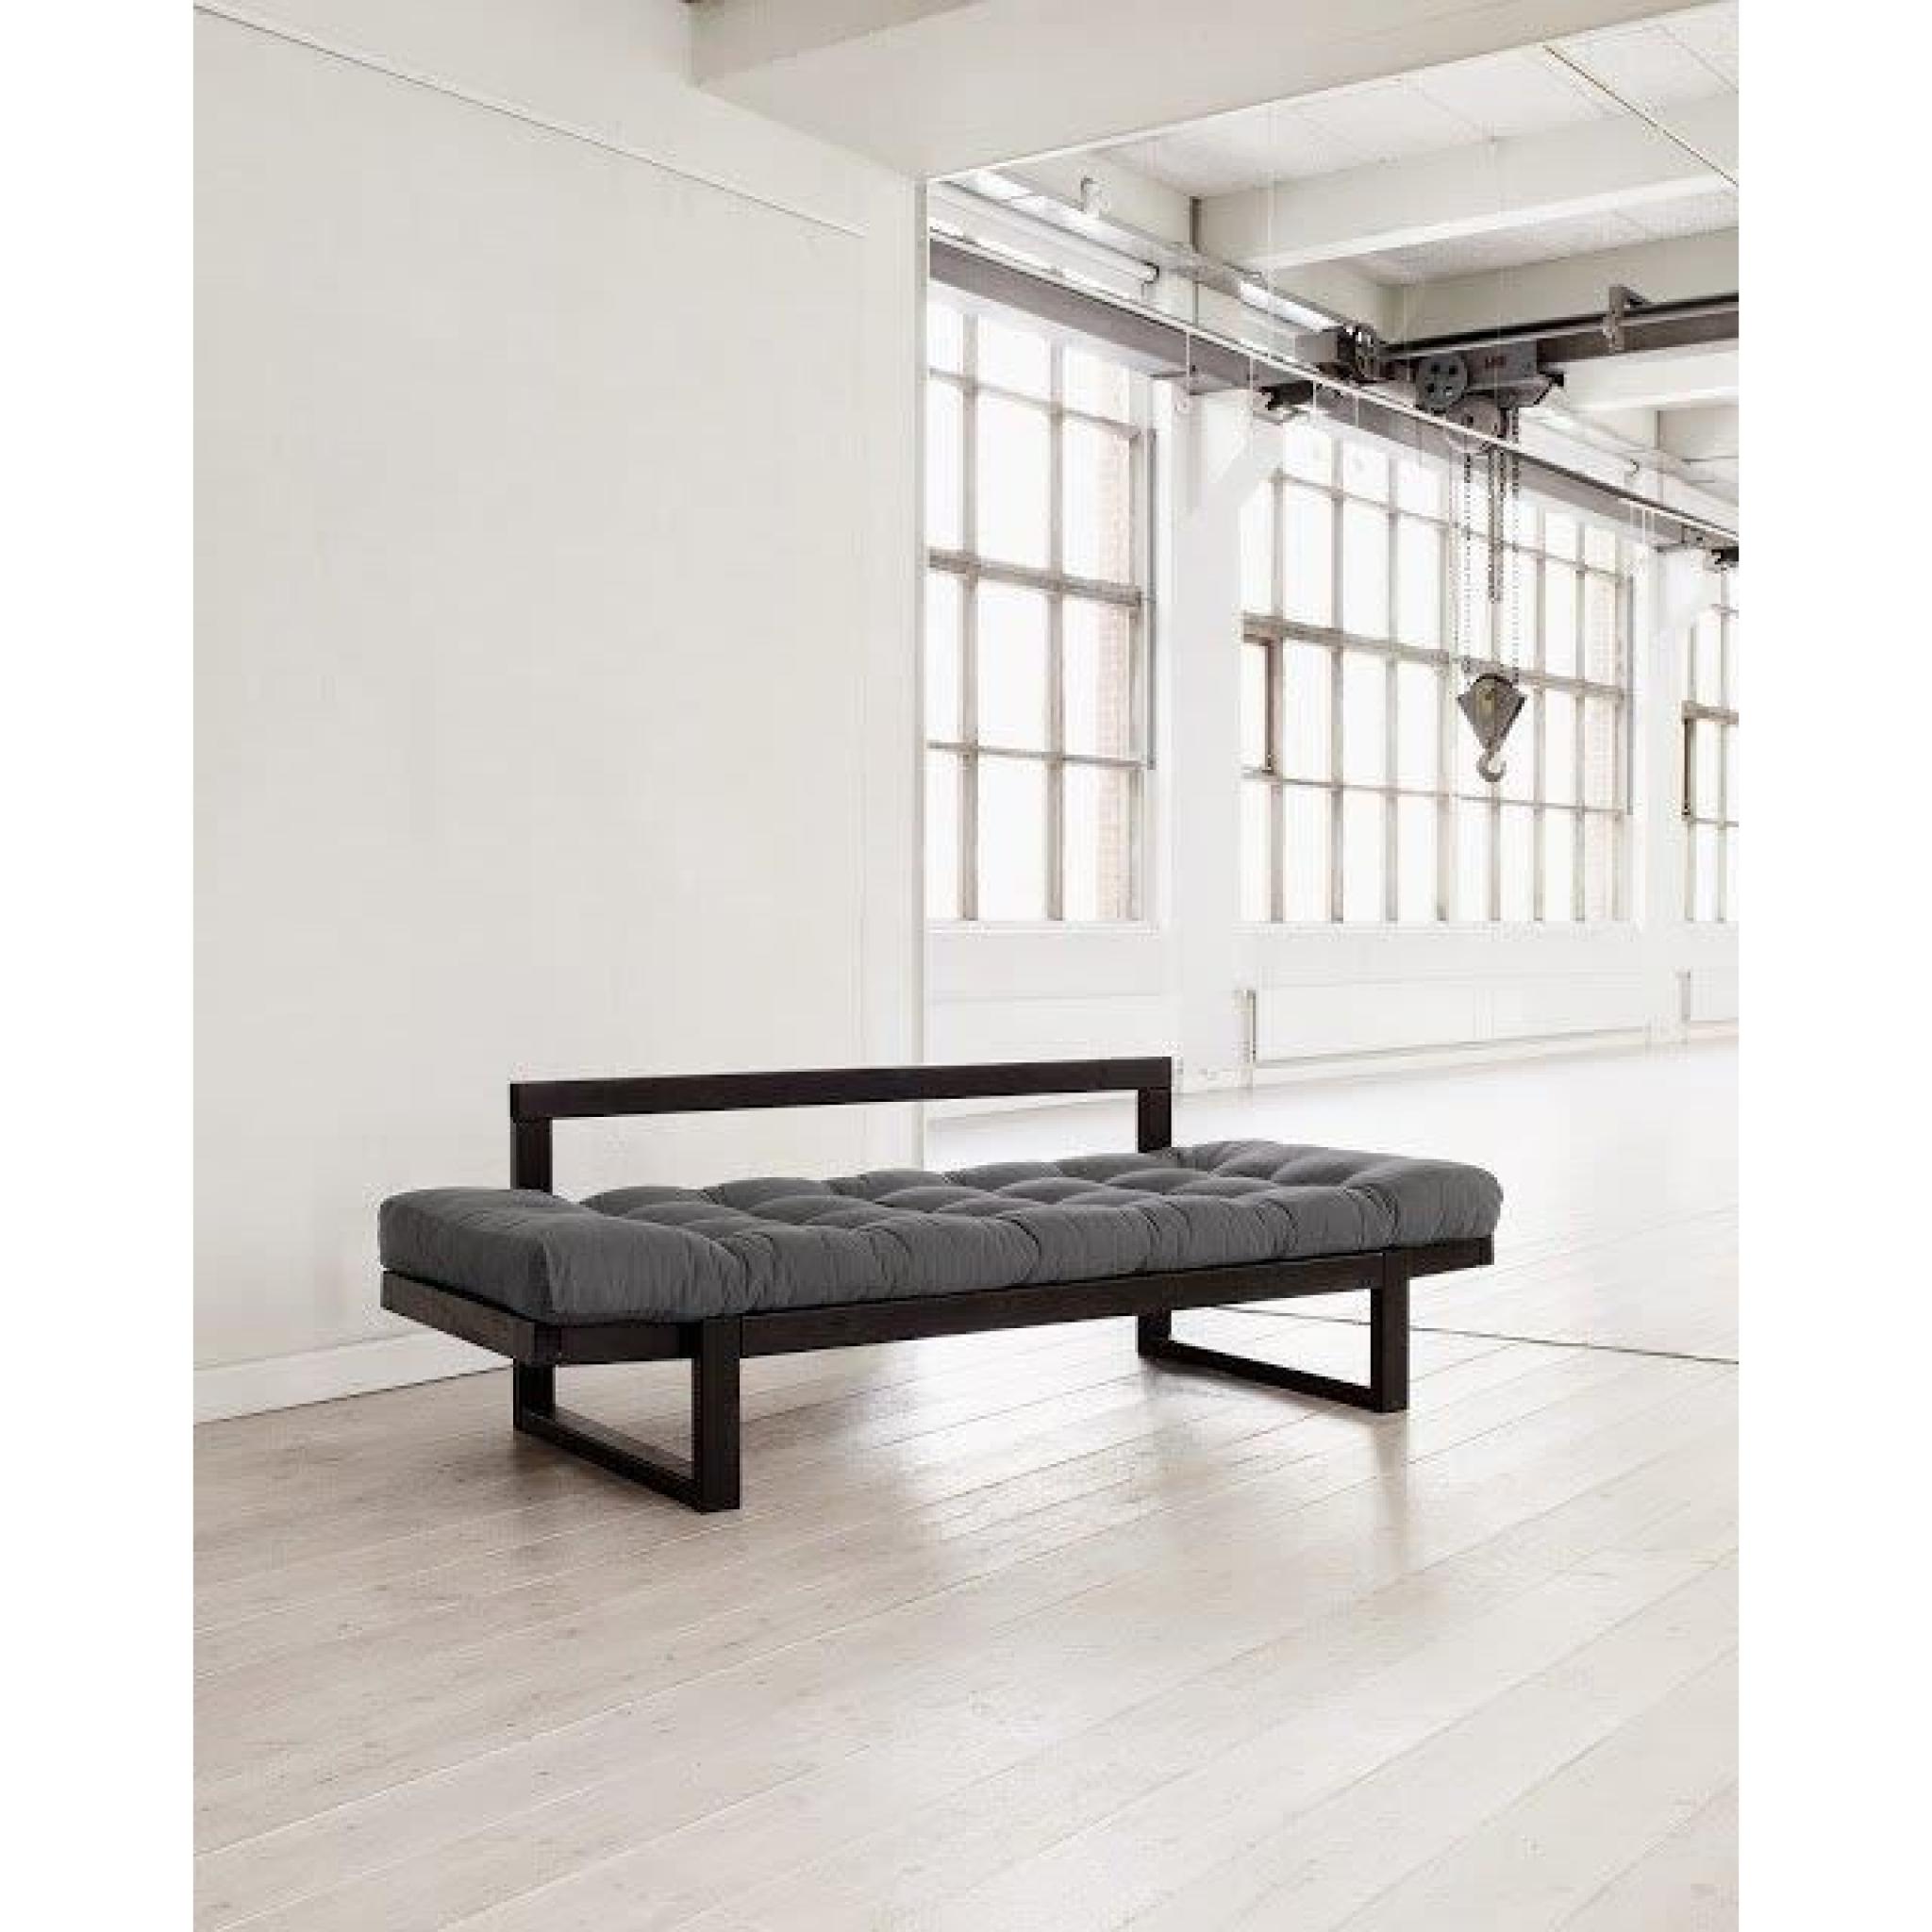 Banquette méridienne noire futon gris EDGE couchage 75*200cm pas cher